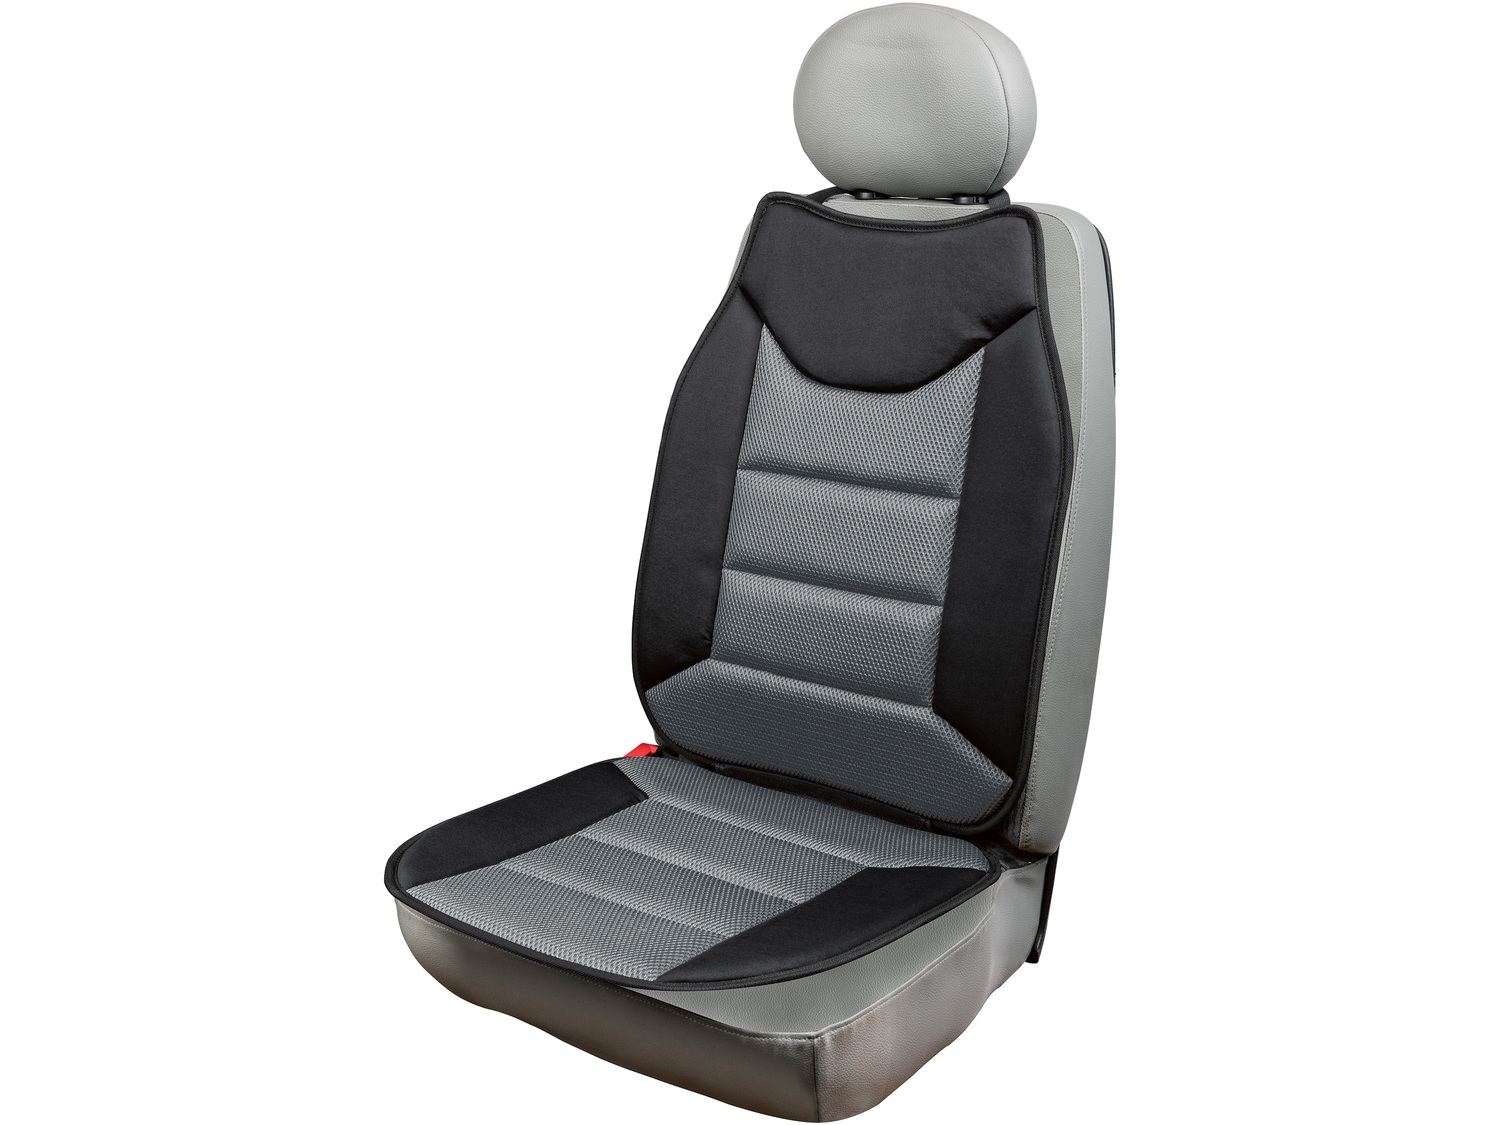 Pokrowiec na fotel samochodowy Ultimate Speed, cena 29,99 PLN 
3 kolory 
- uniwersalny ...